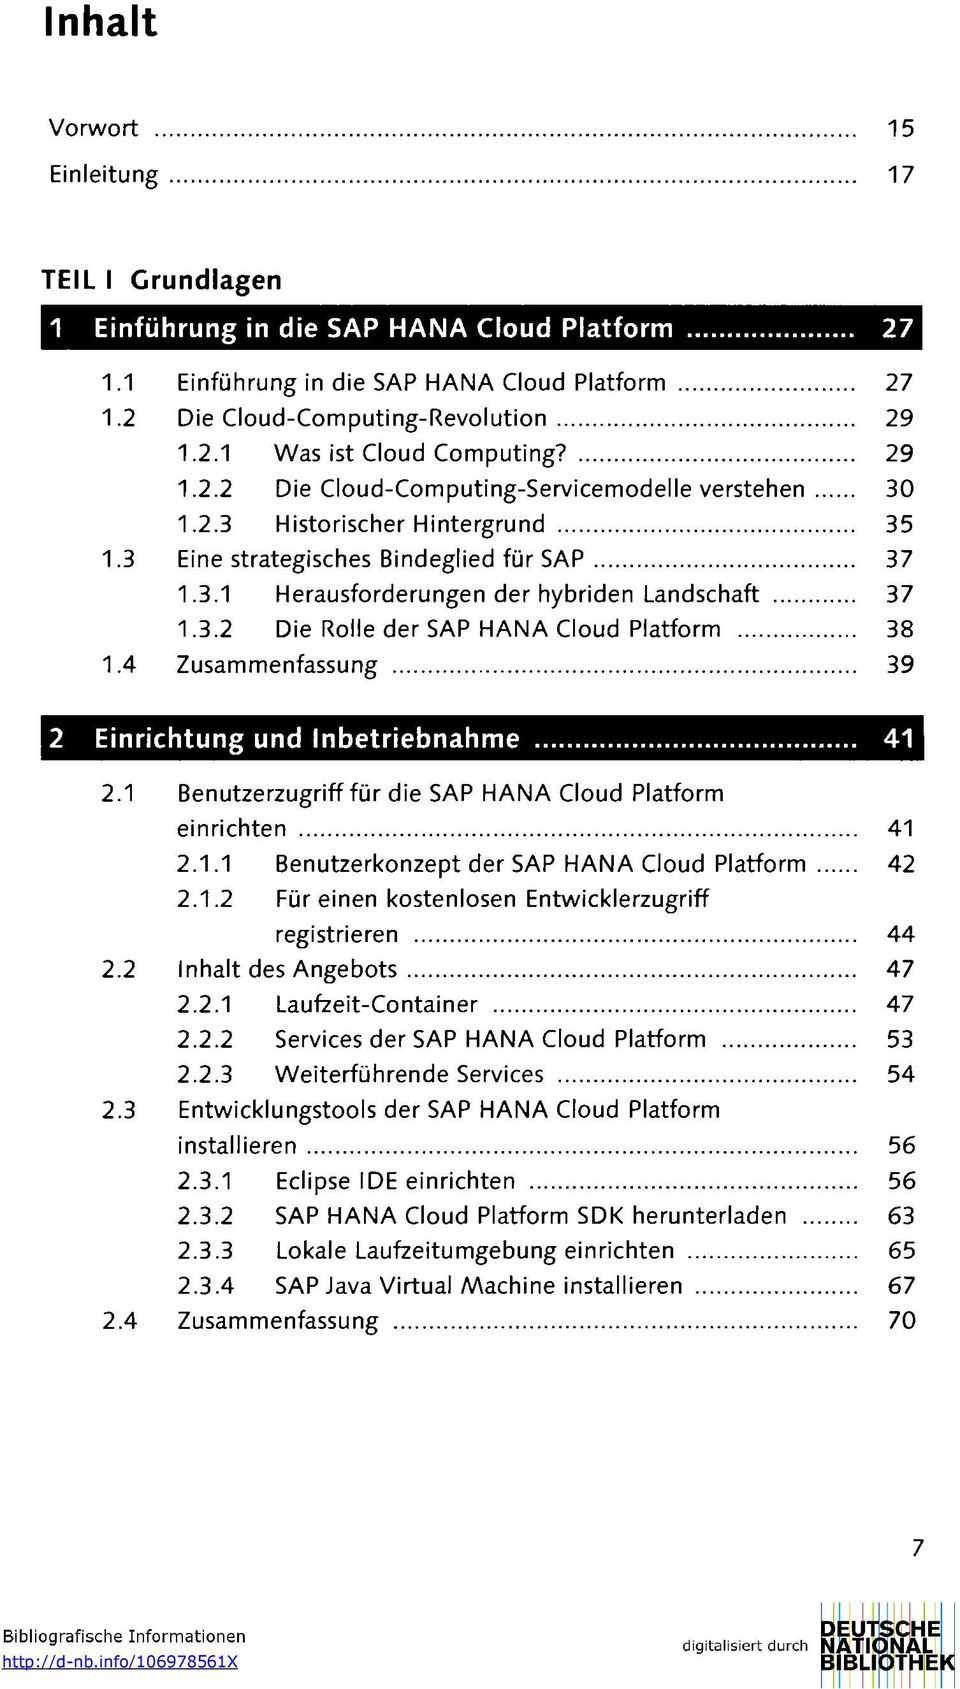 1 Benutzerzugriff für die SAP HANA Cloud Platform einrichten 41 2.1.1 Benutzerkonzept der SAP HANA Cloud Platform 42 2.1.2 Für einen kostenlosen Entwicklerzugriff registrieren 44 2.